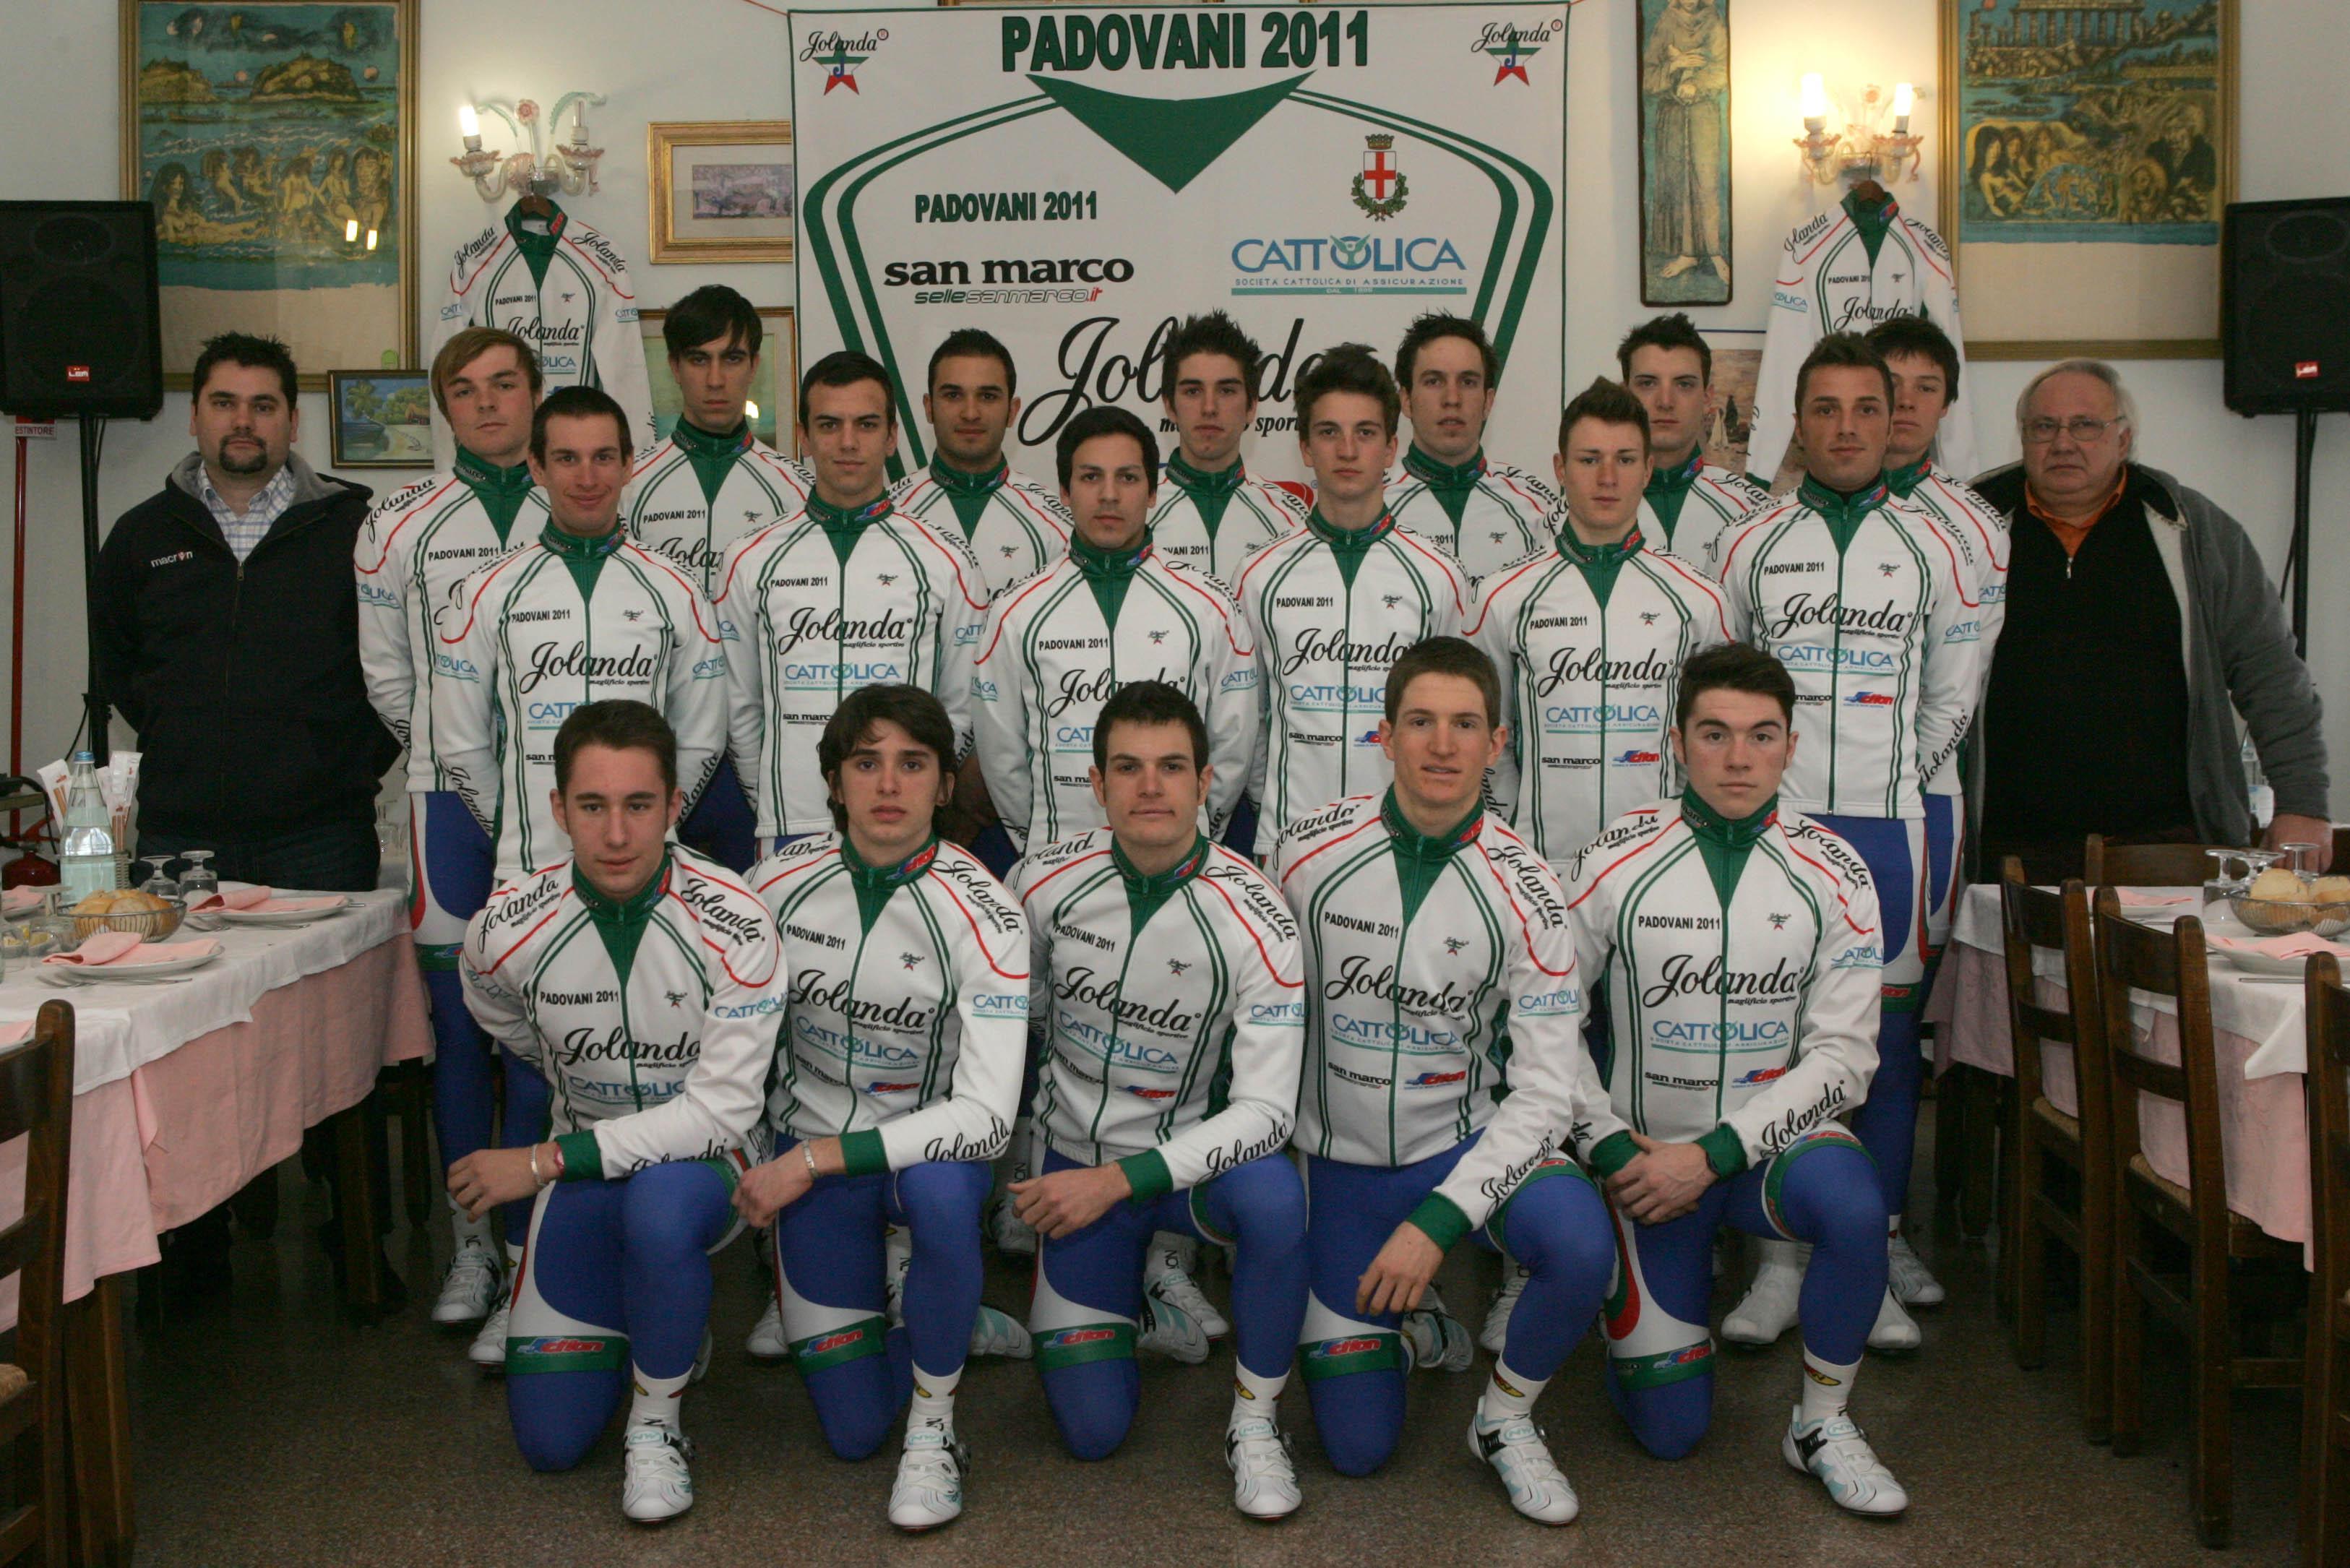 Il Team Padovani 2011 si ripresenta sulla scena 